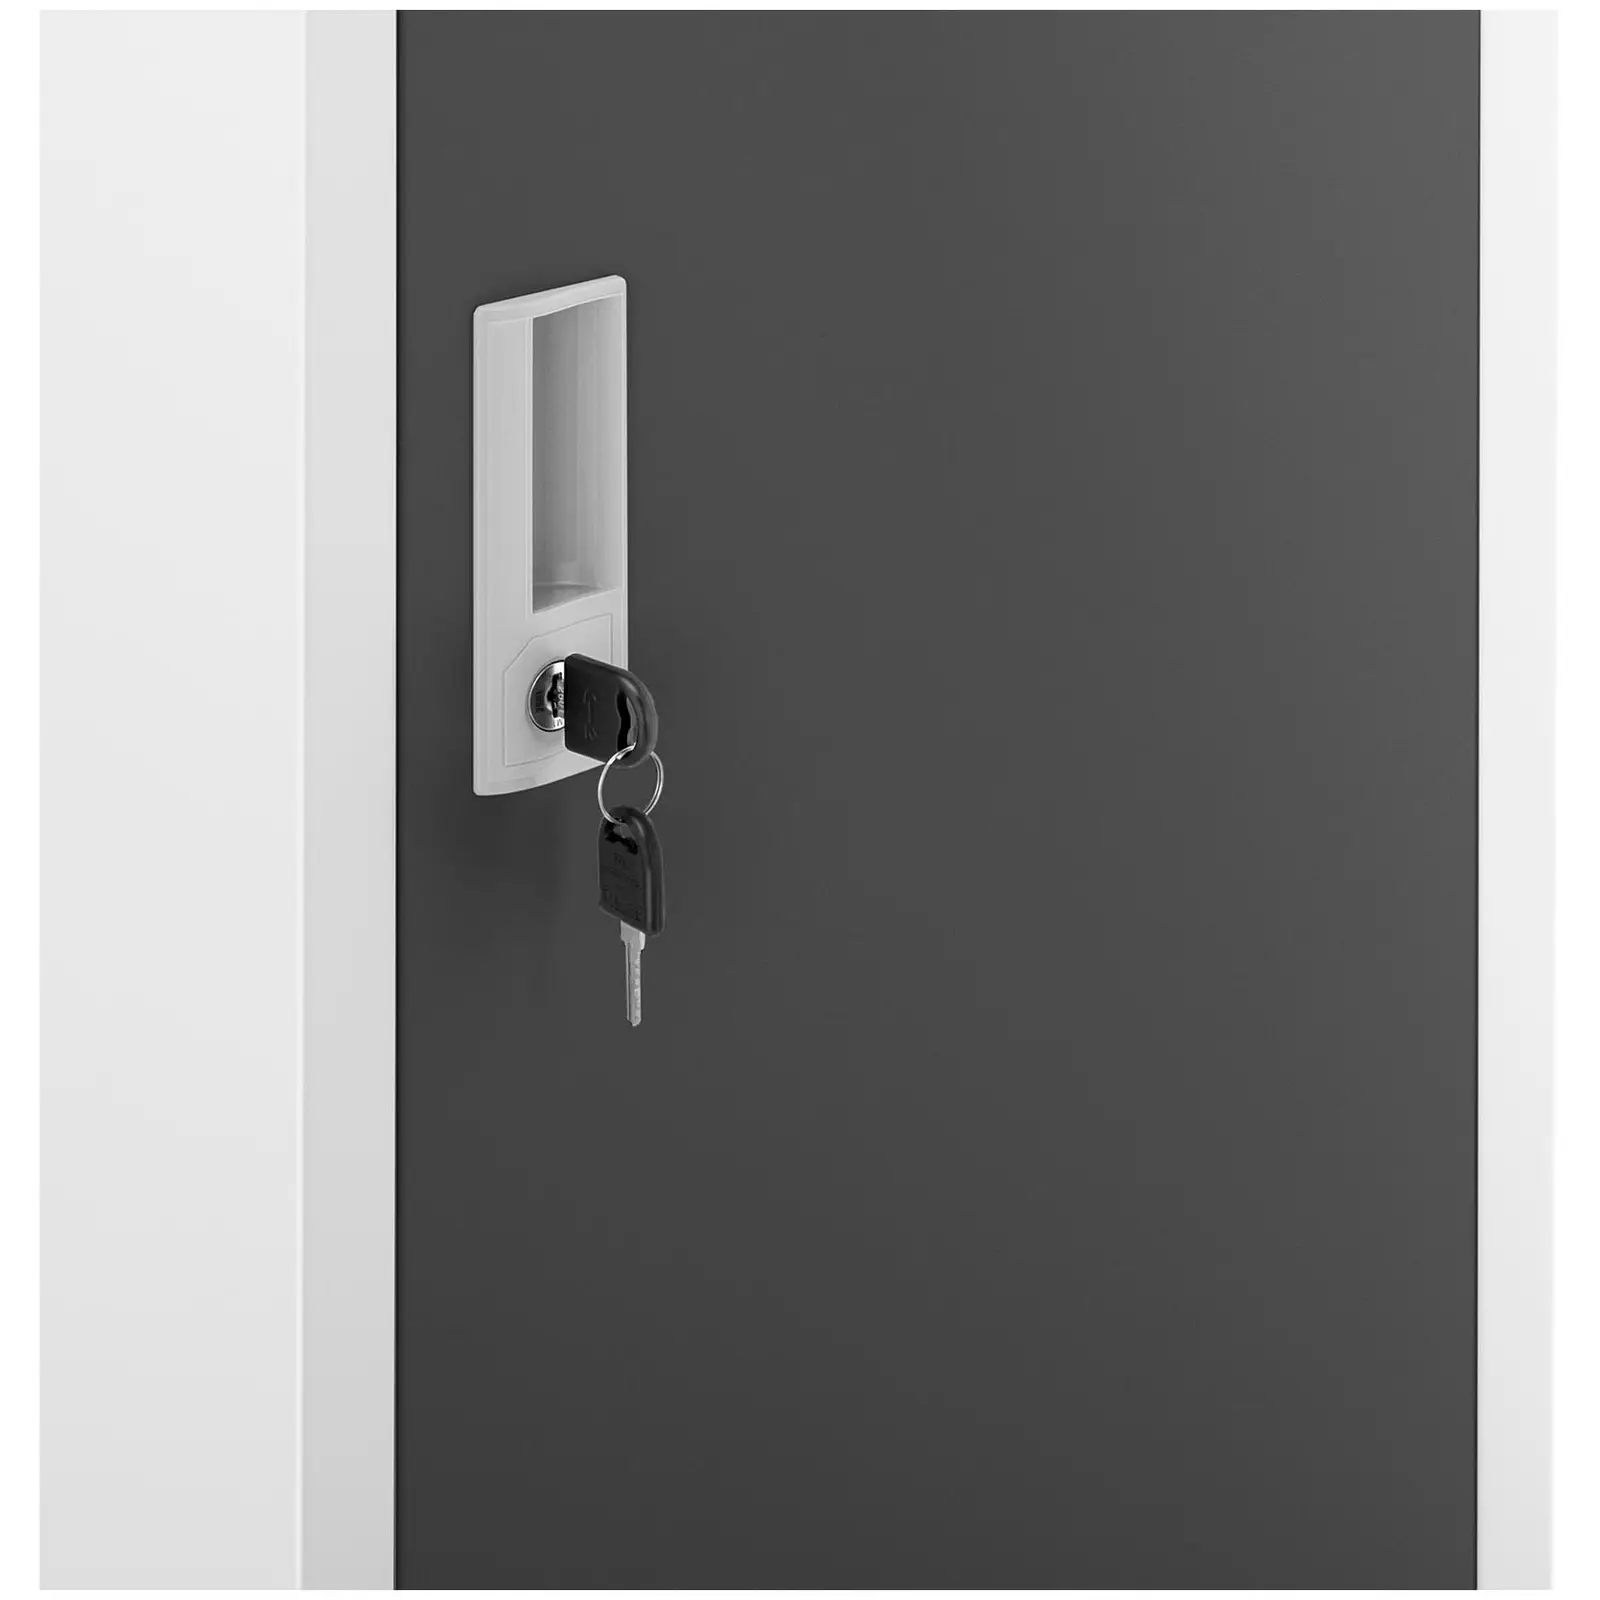 Metal Storage Locker - 1 compartment - grey / dark grey